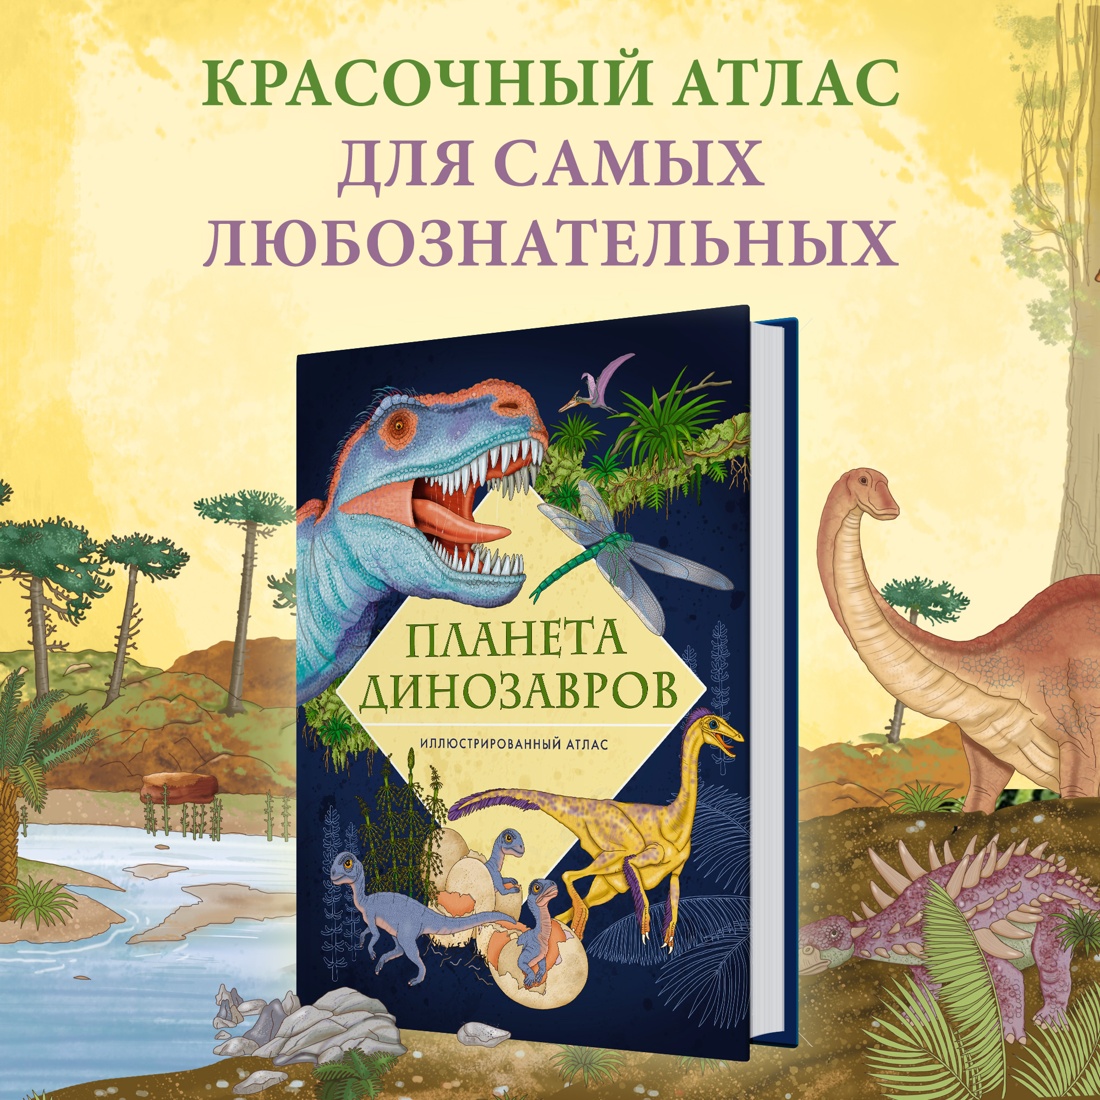 Промо материал к книге "Планета динозавров. Иллюстрированный атлас" №0